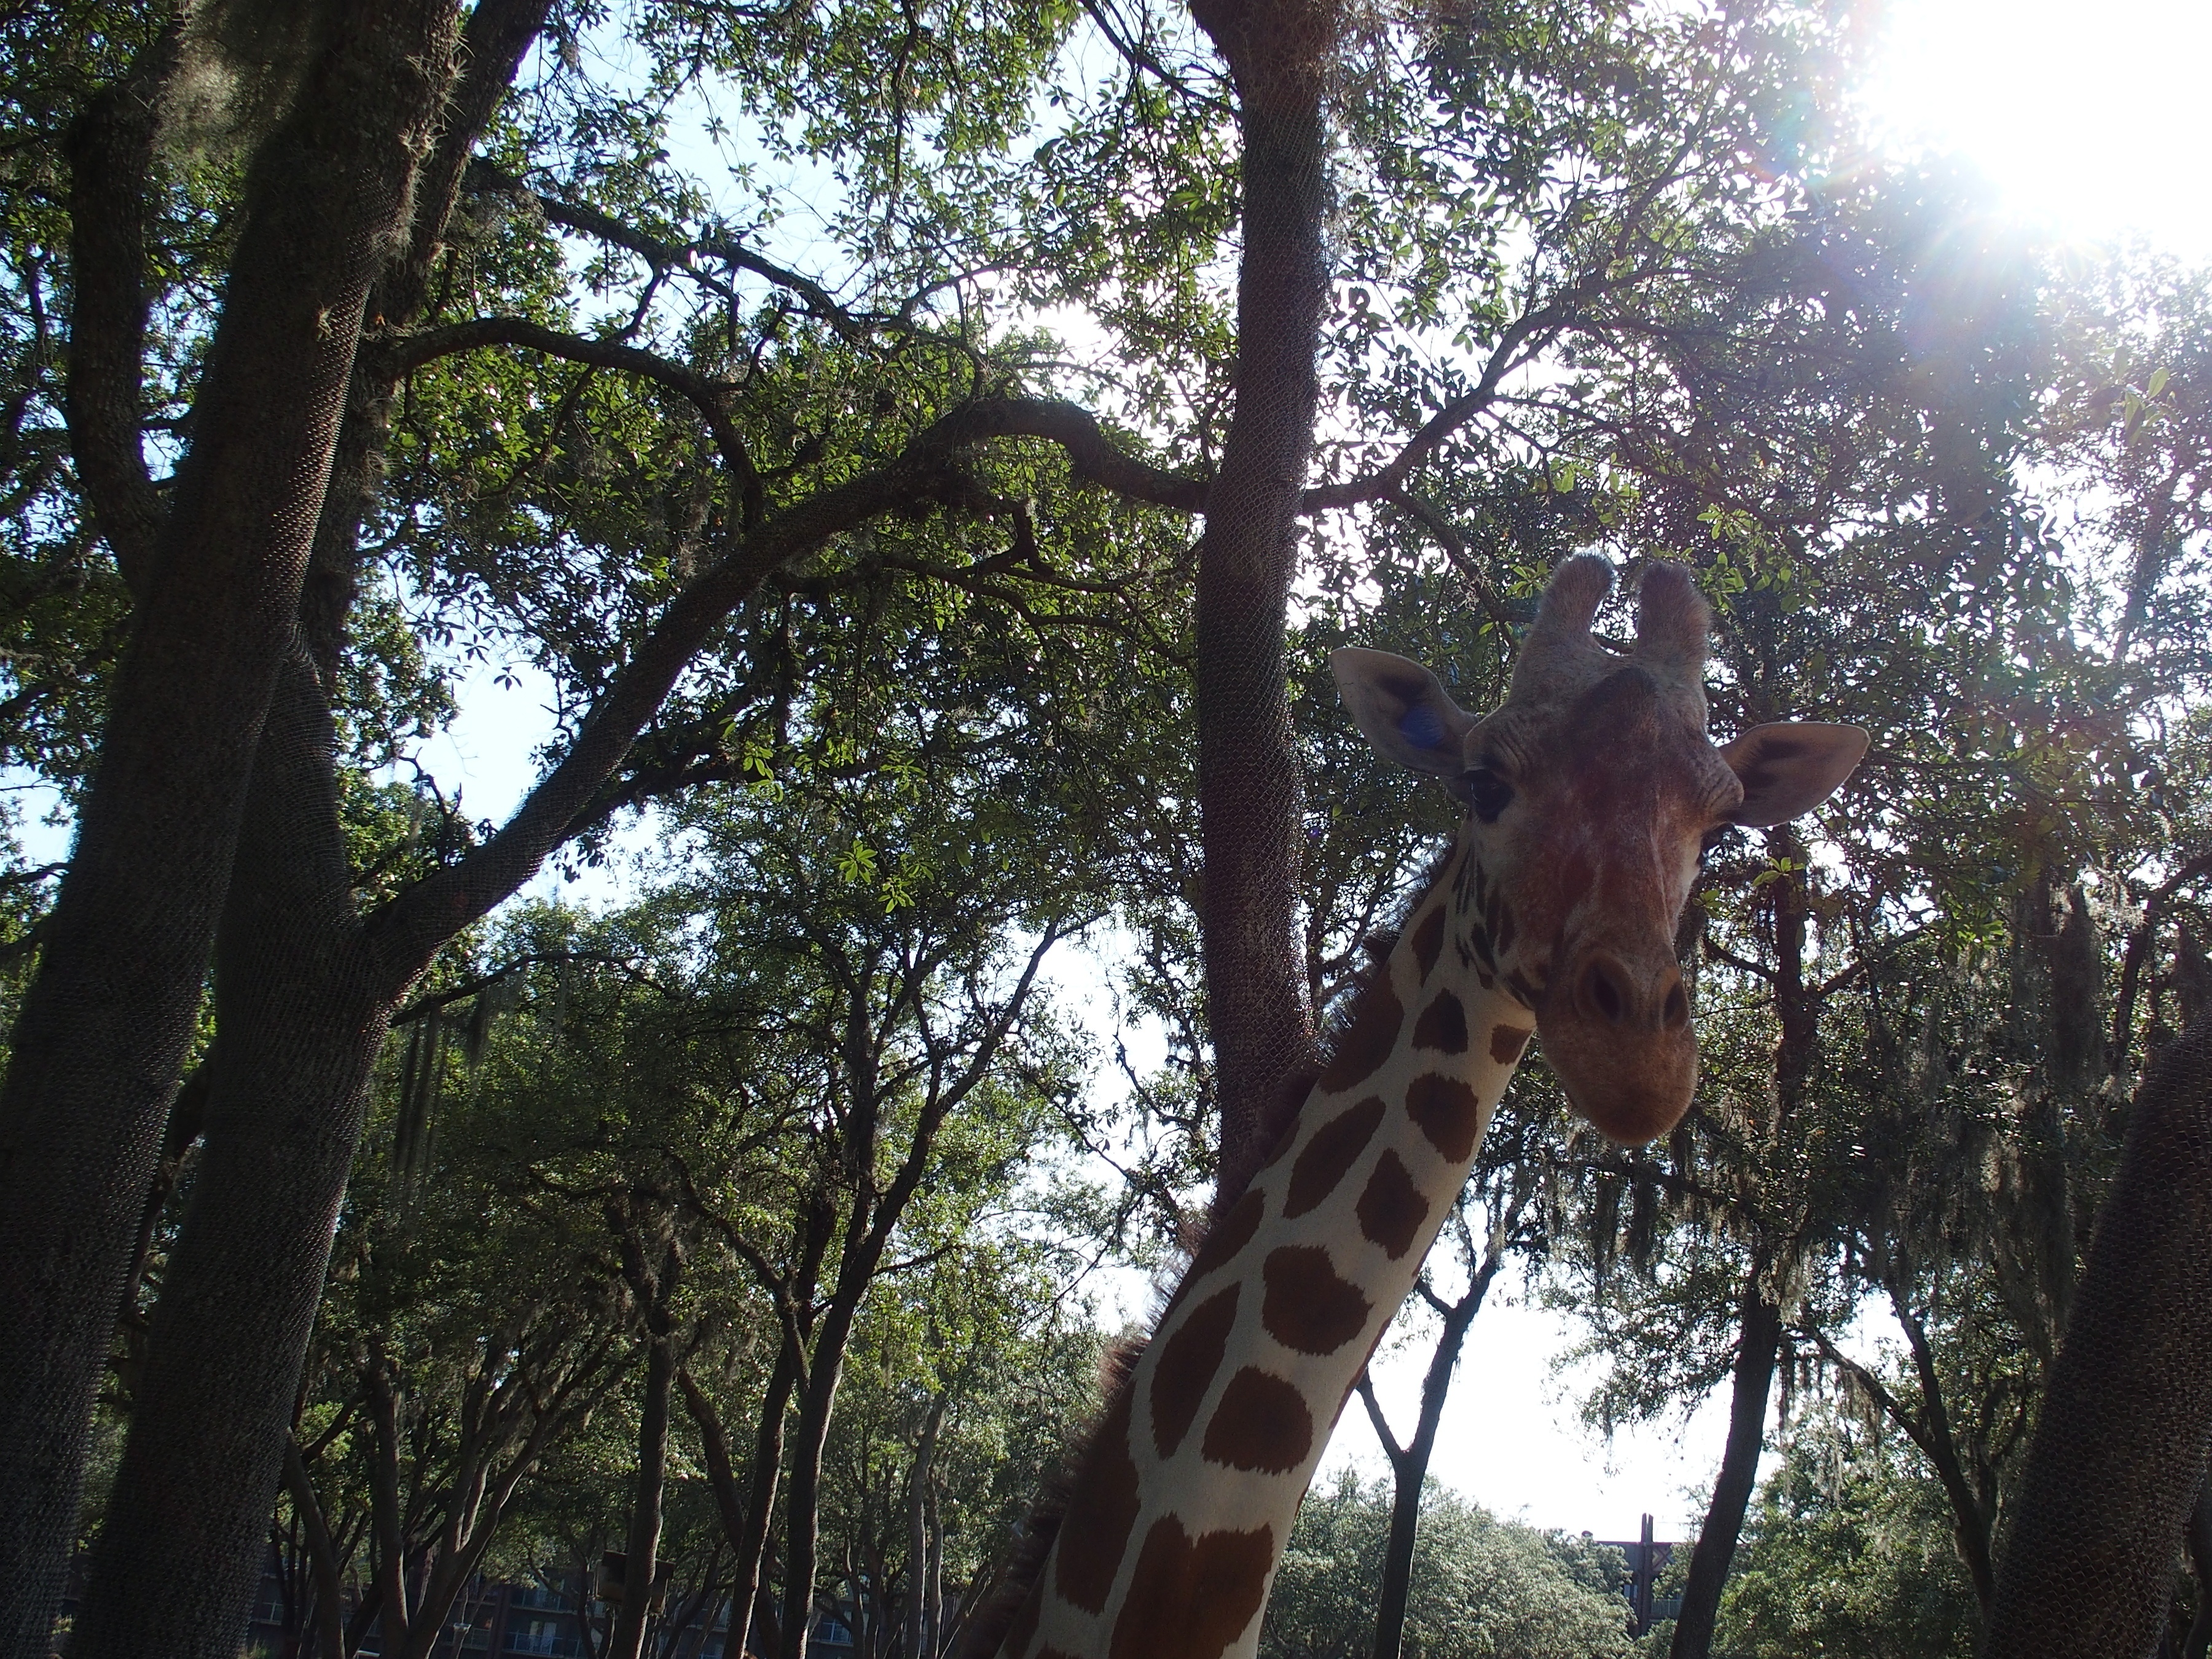 Reticulated giraffe #17